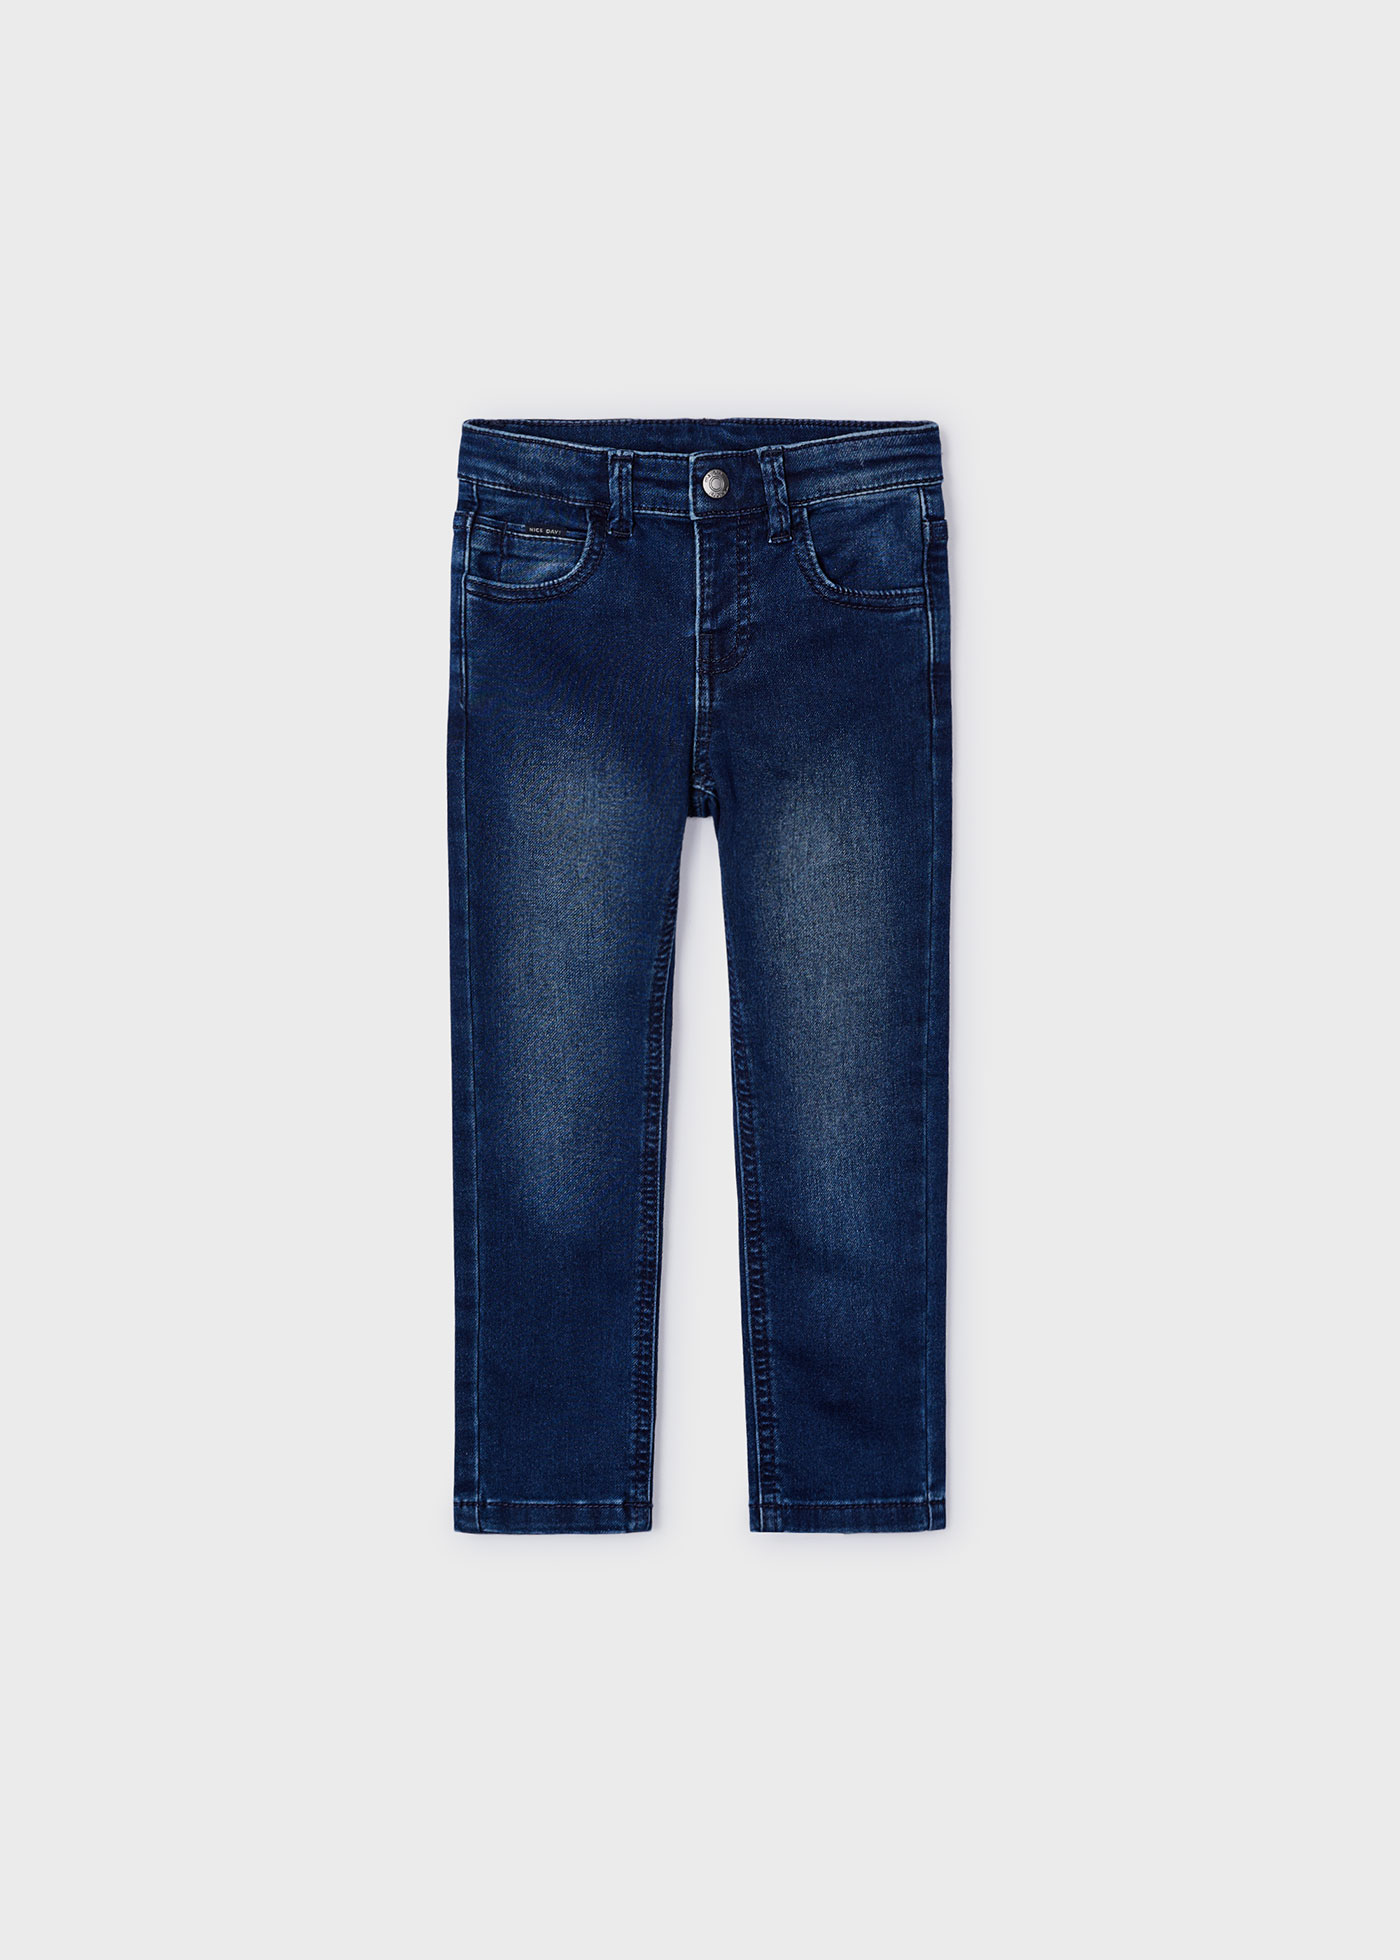 Pantalone jeans slim Better Cotton bambino